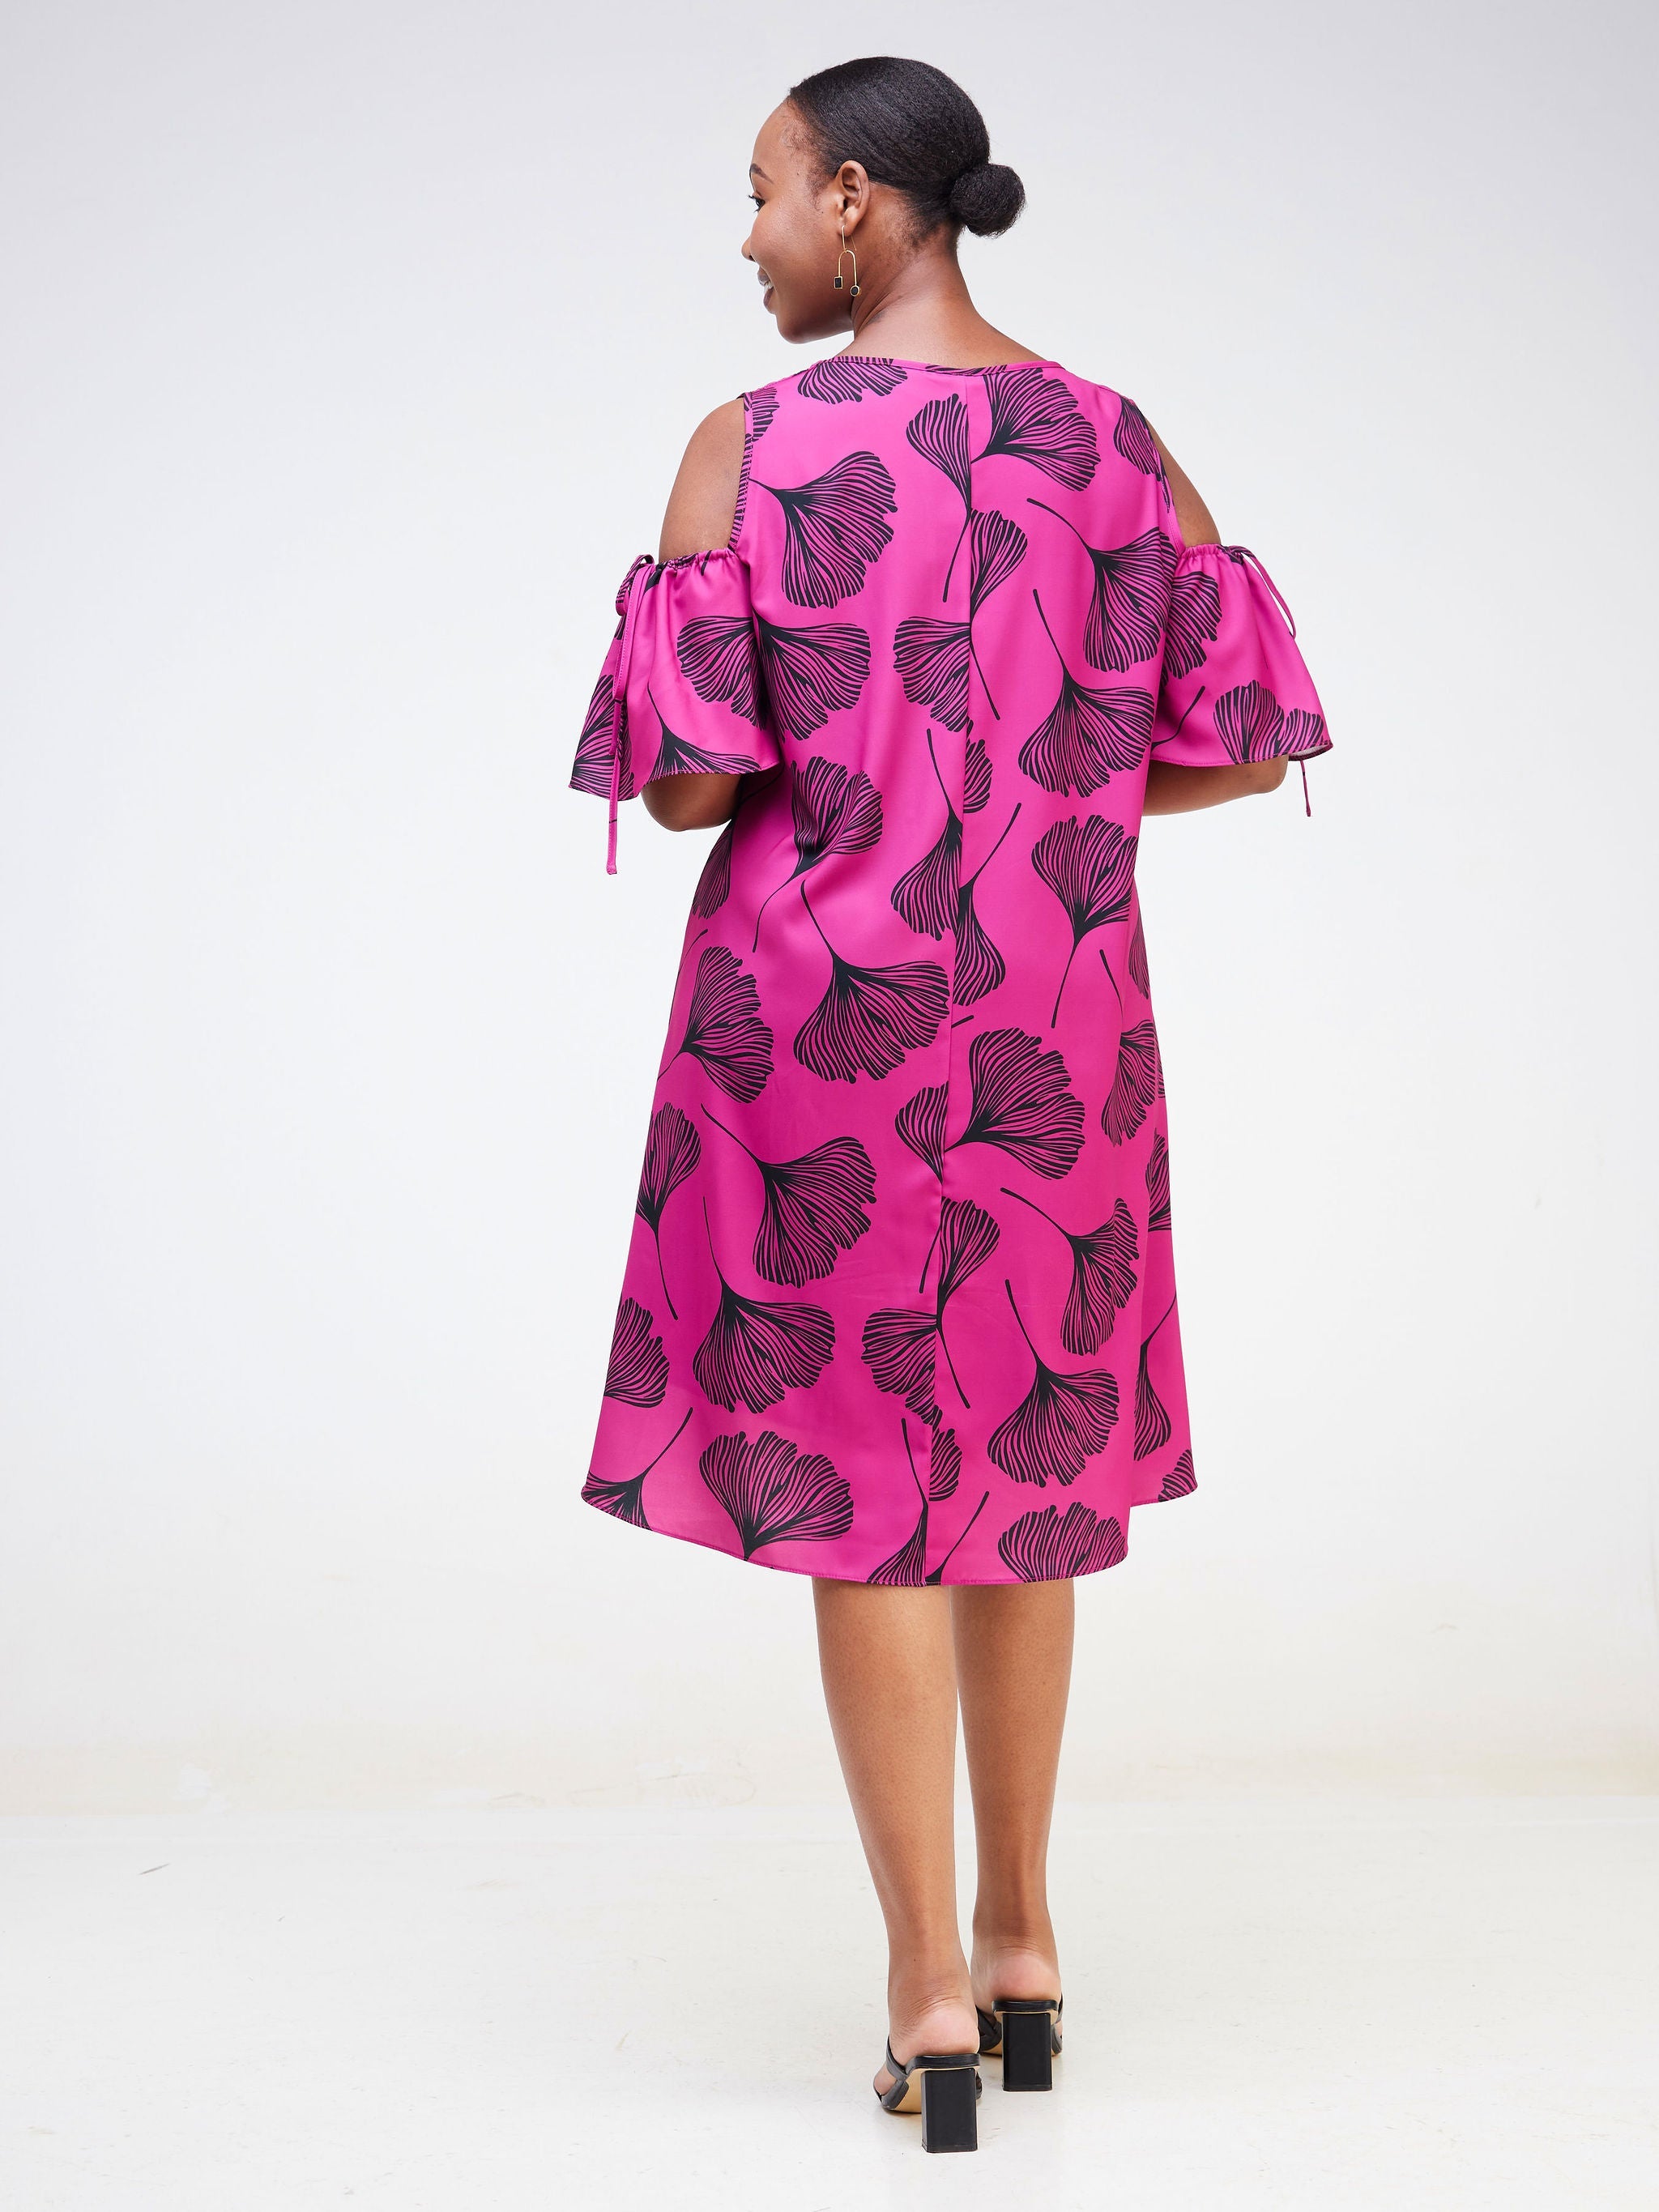 Vivo Dali Cold Shoulder Tie Knee Length Tent Dress - Pink / Black Leaf Print